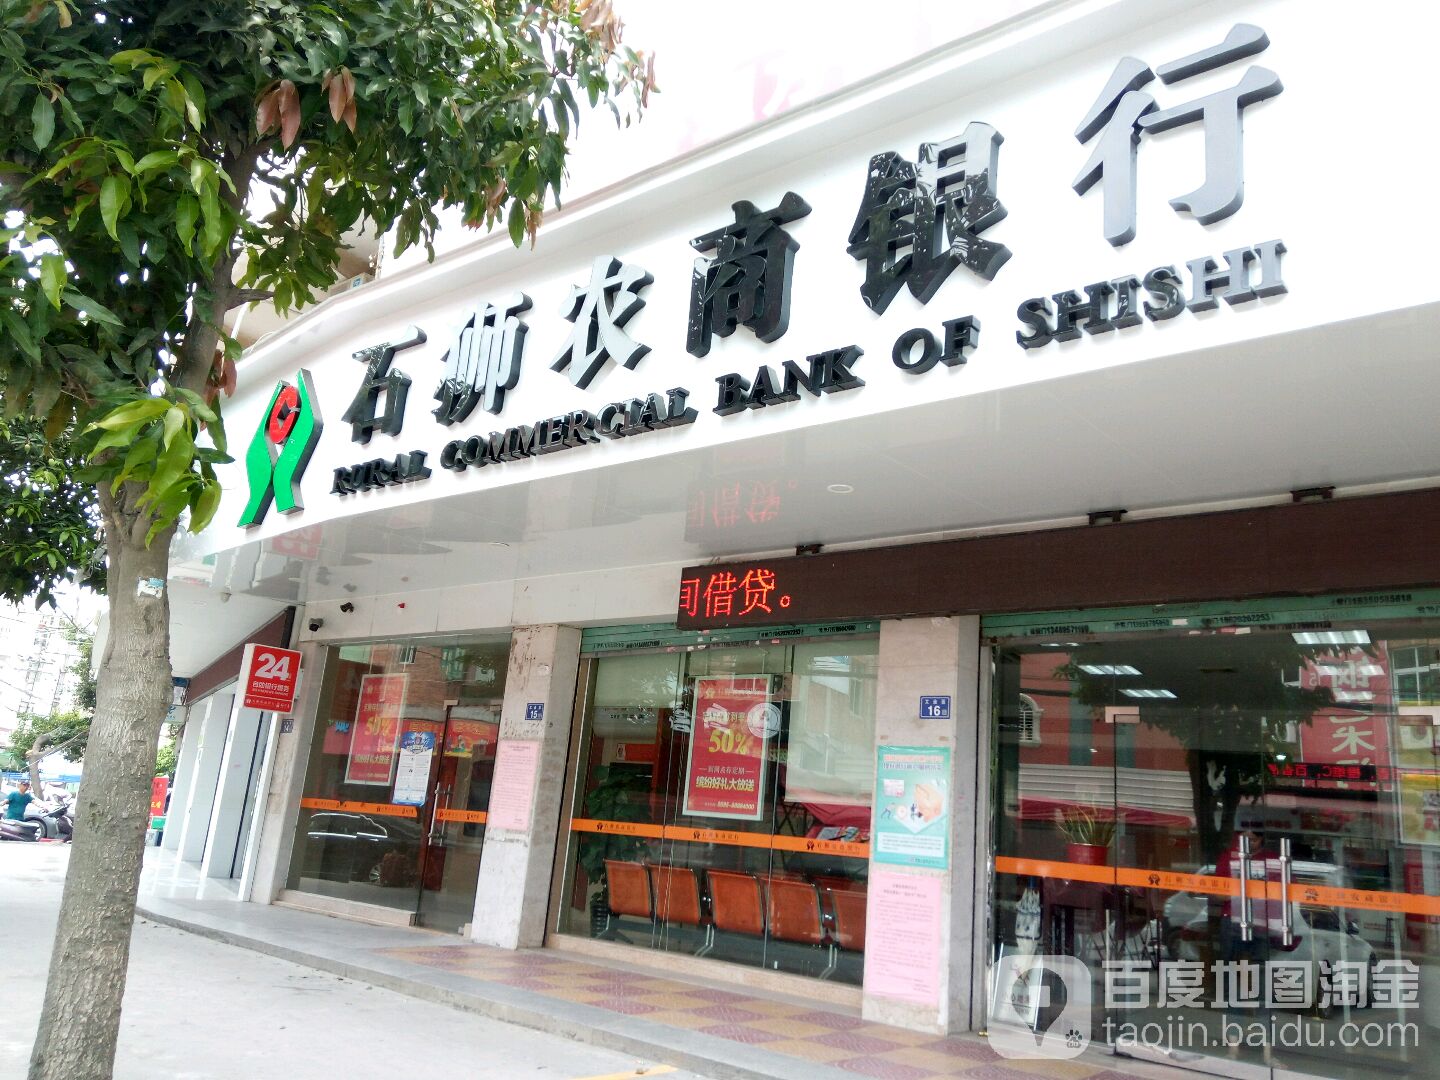 石狮市农村商业银行24小时自助银行(锦亭支行)